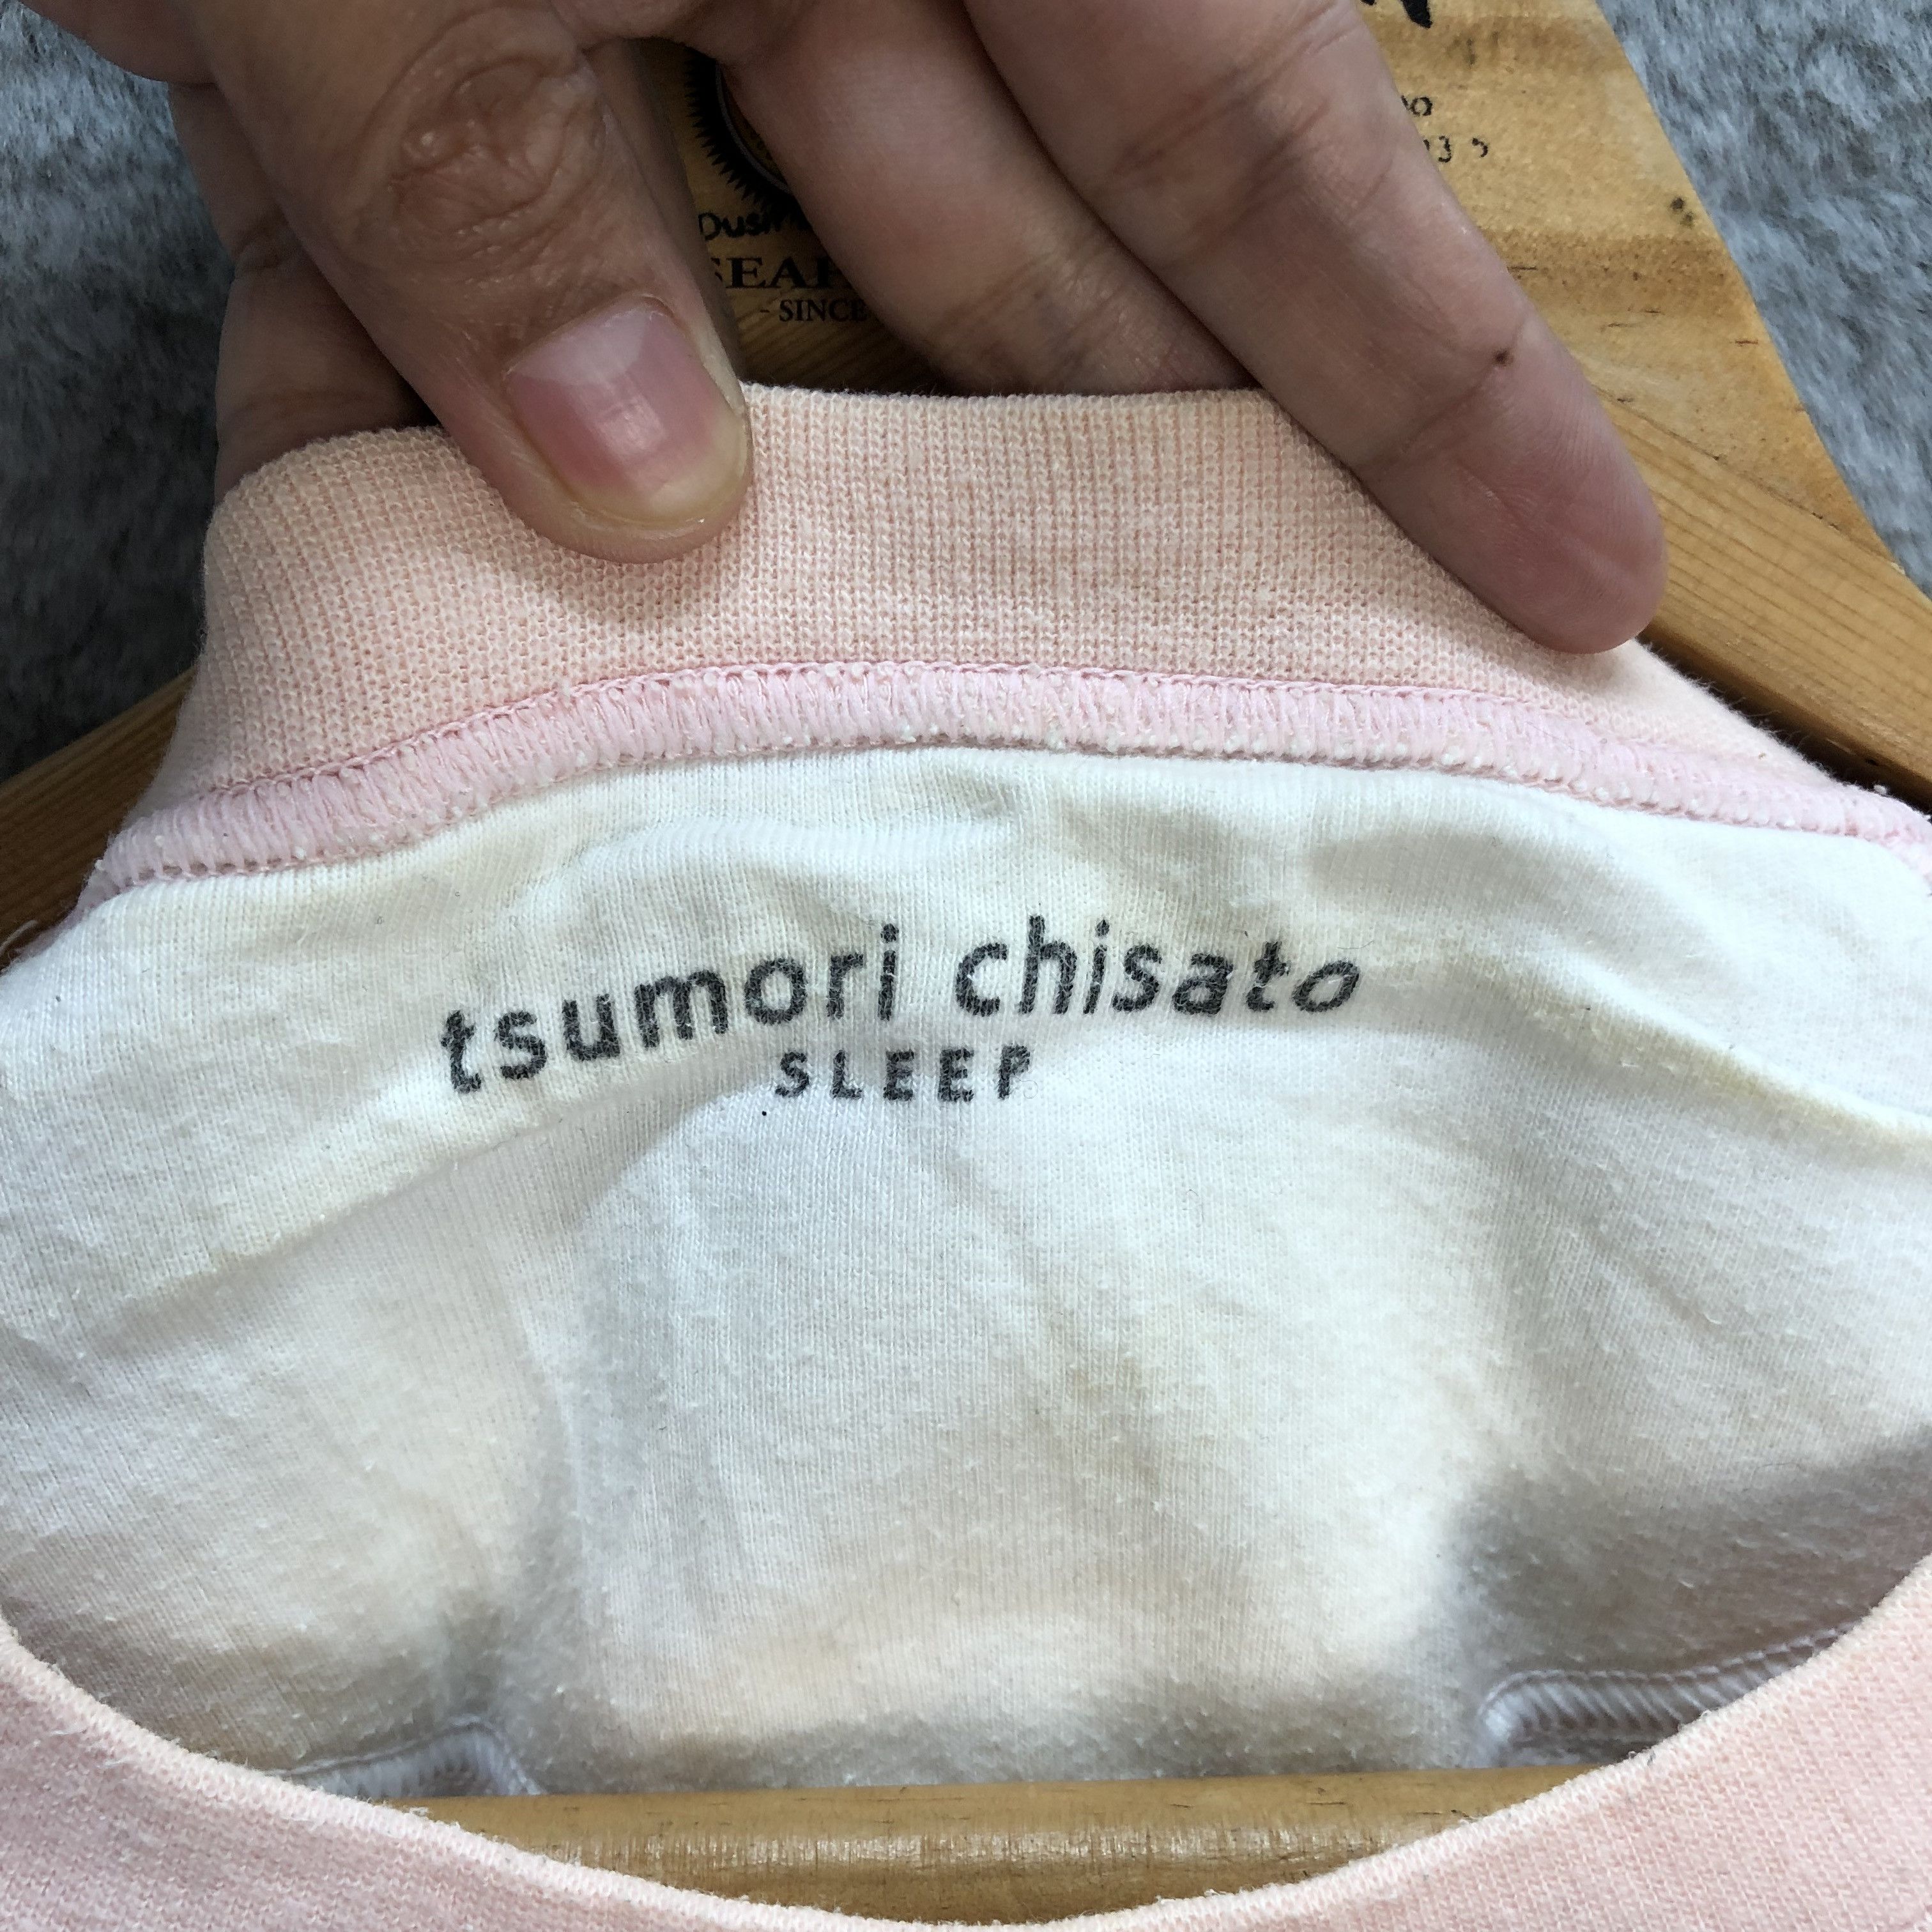 Tsumori Chisato Sleep Star Fleece Long Sweatshirts #5682-202 - 10